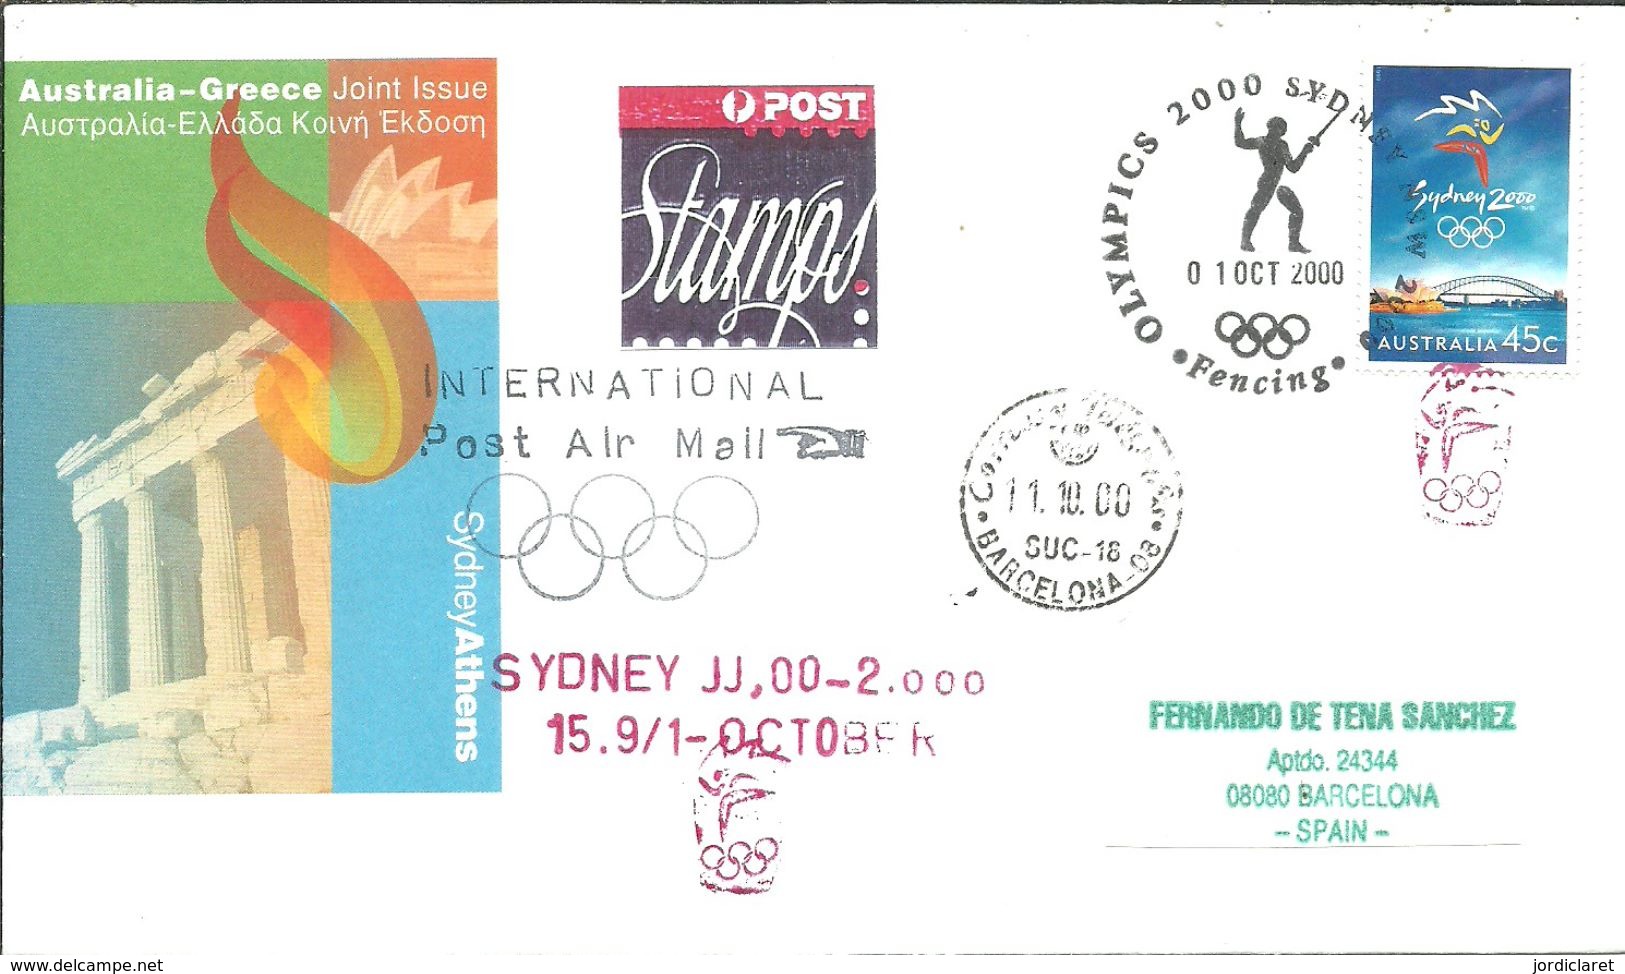 POSMARKET AUSTRALIA - Verano 2000: Sydney